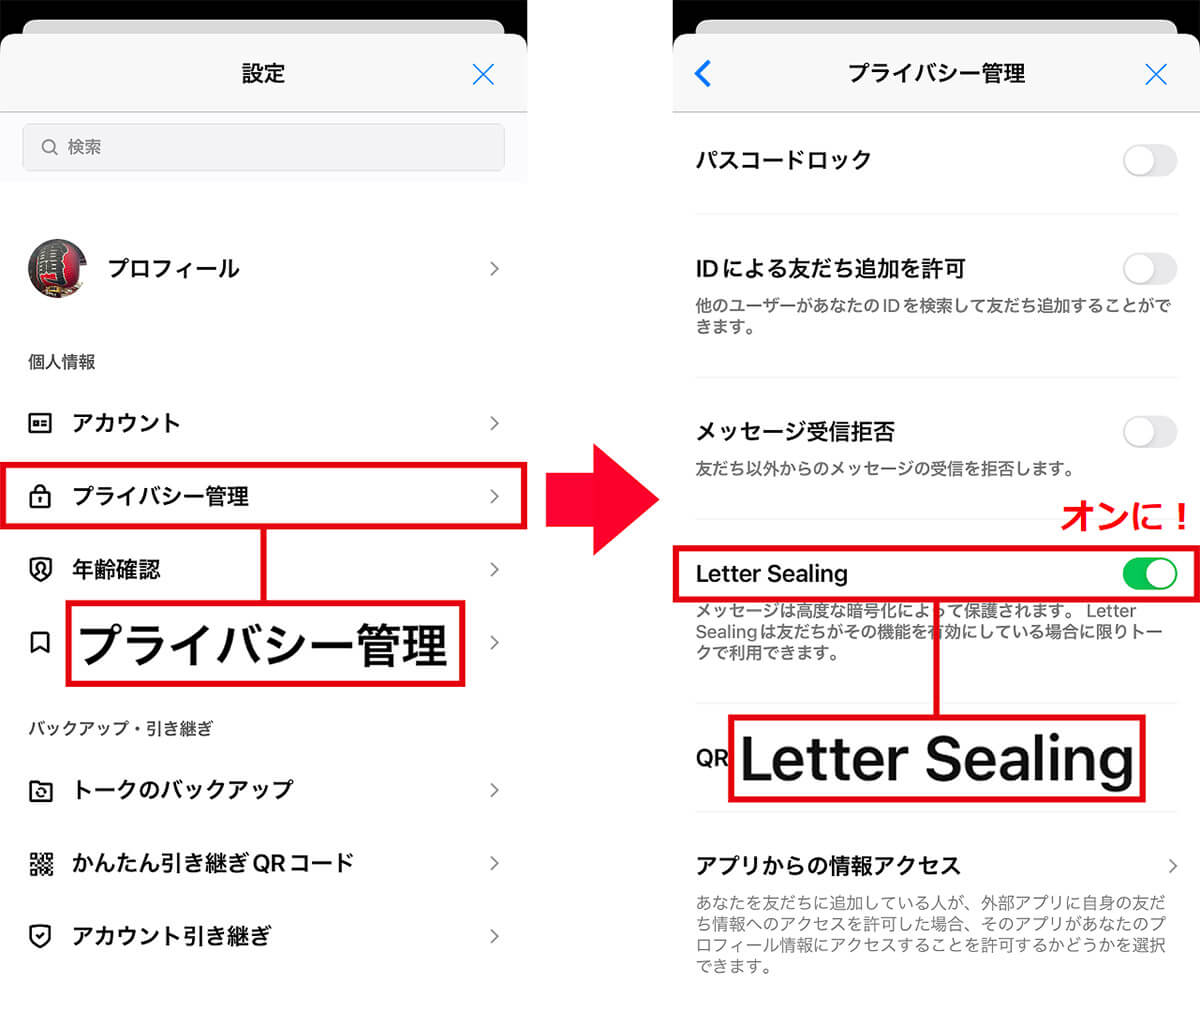 【1】「Letter Sealing」でトーク内容を暗号化1